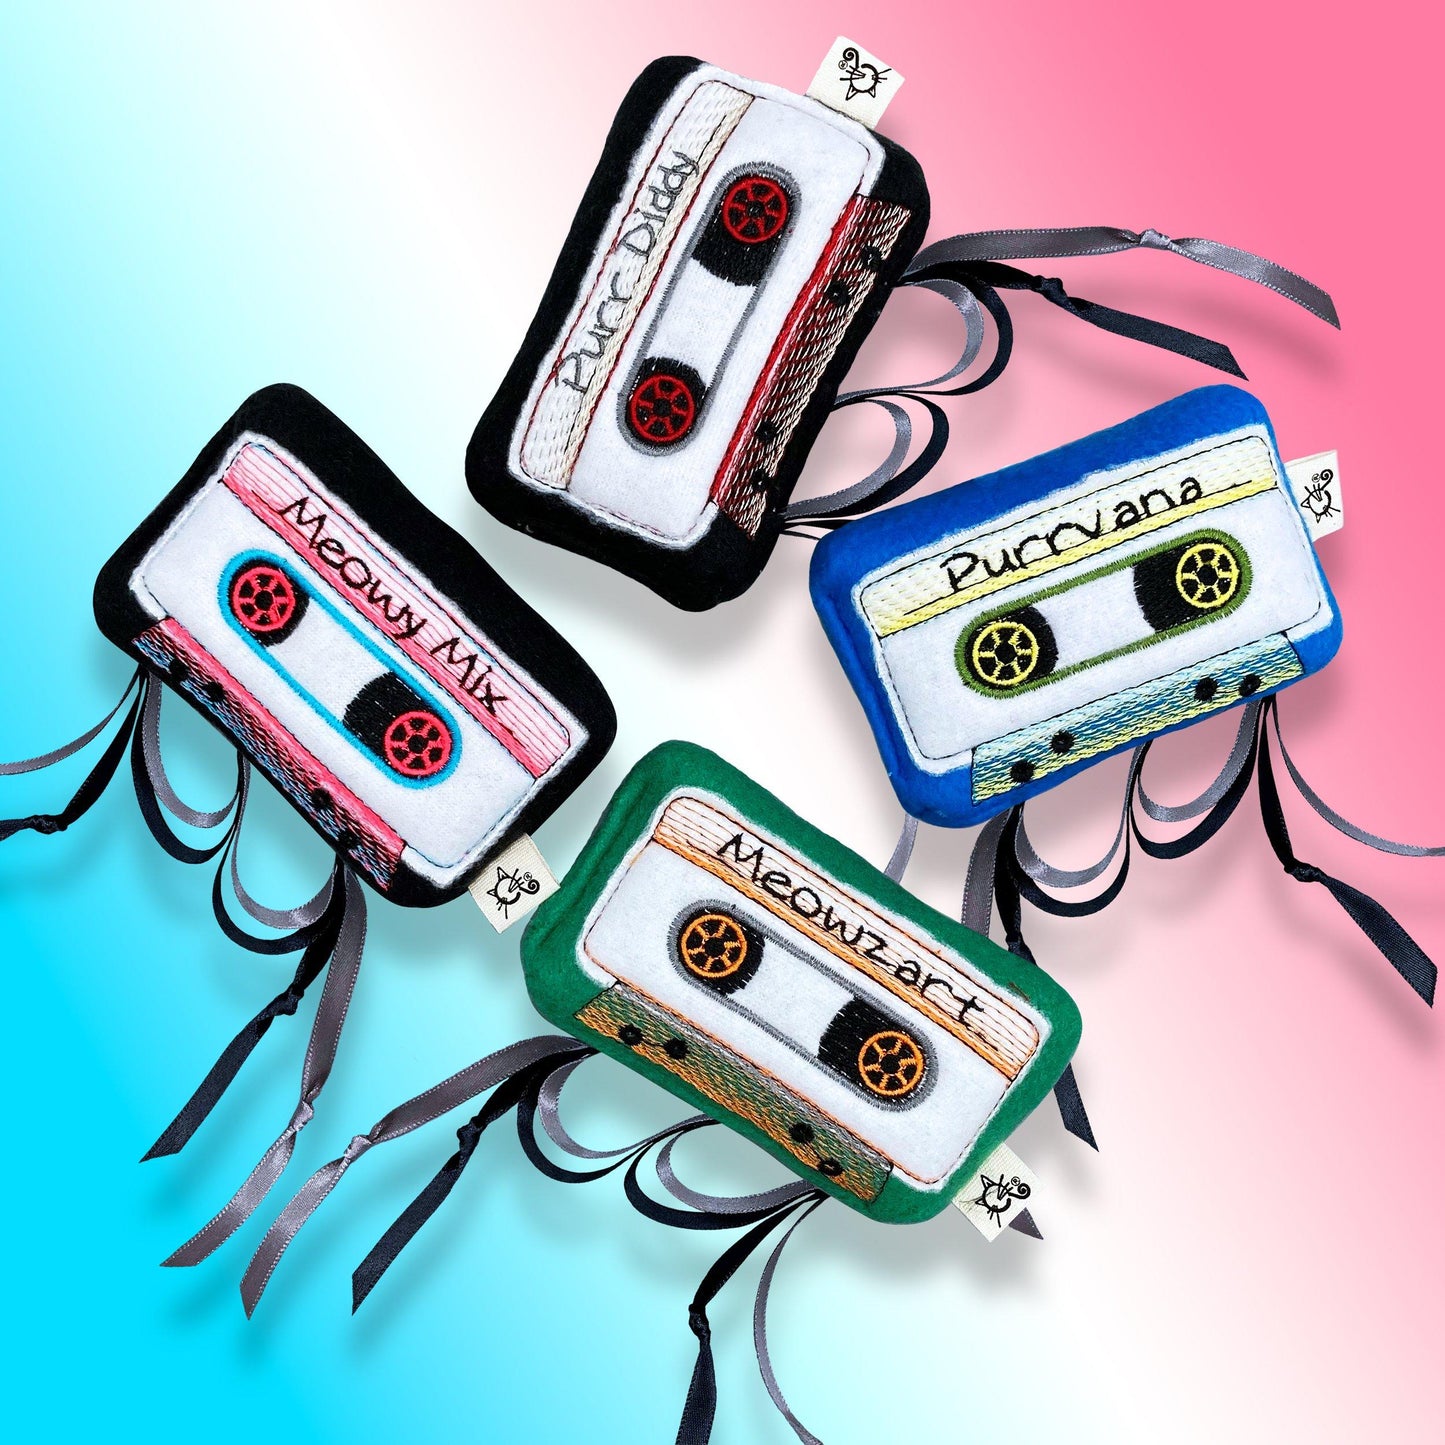 Meowsical Catnip Cassette Tape